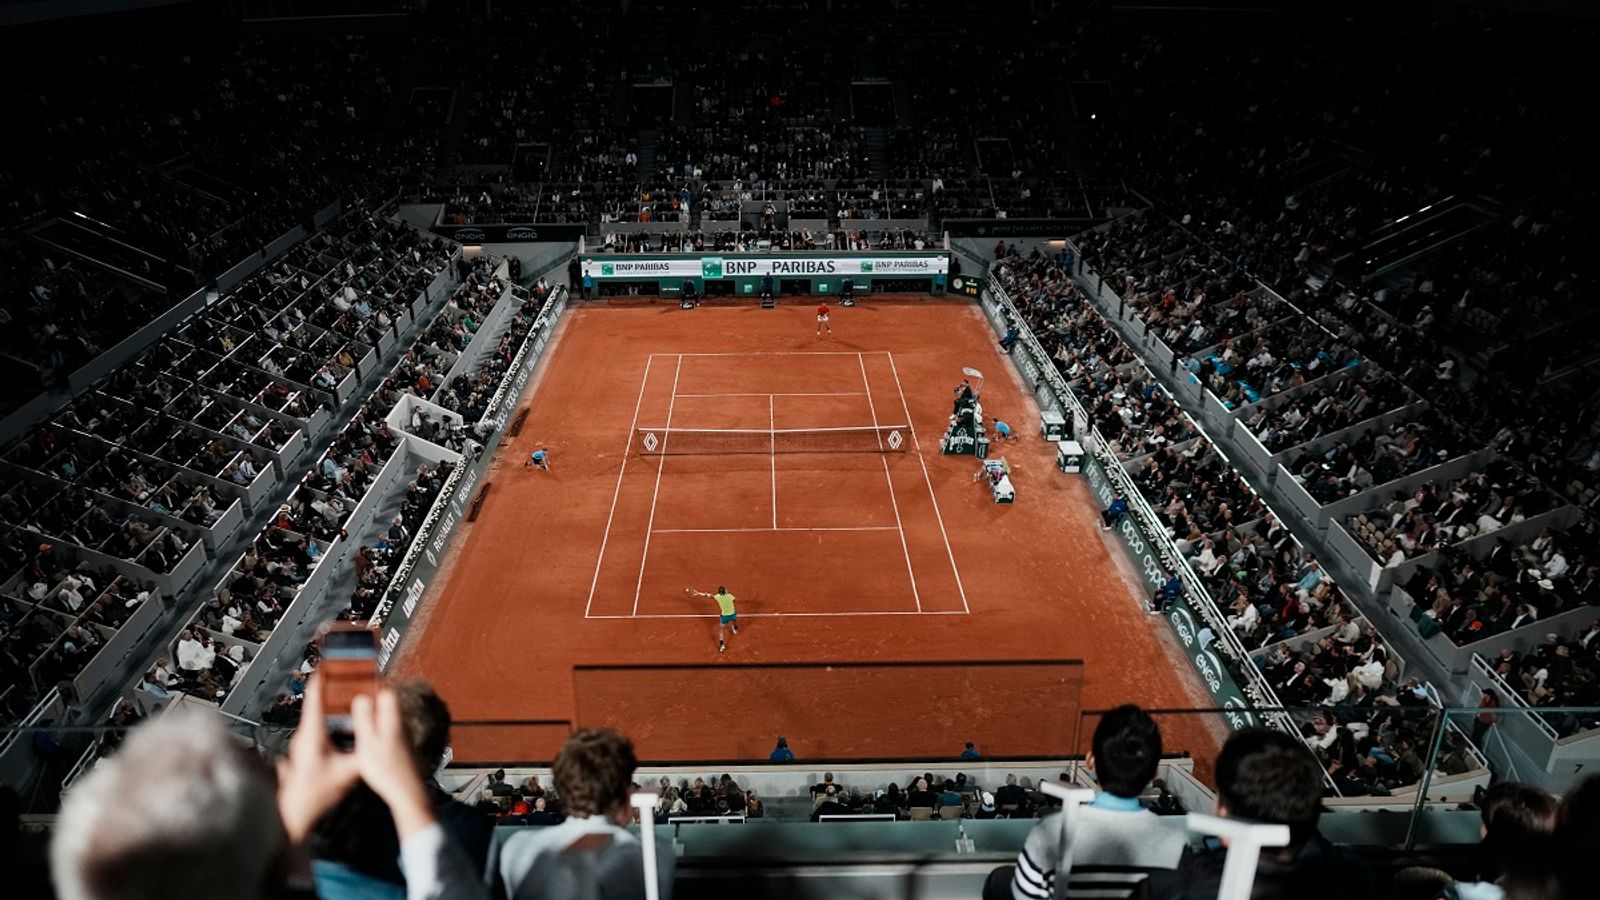 French Open Night Sessions im Tennis sorgen für Diskussionen Tennis News Sky Sport